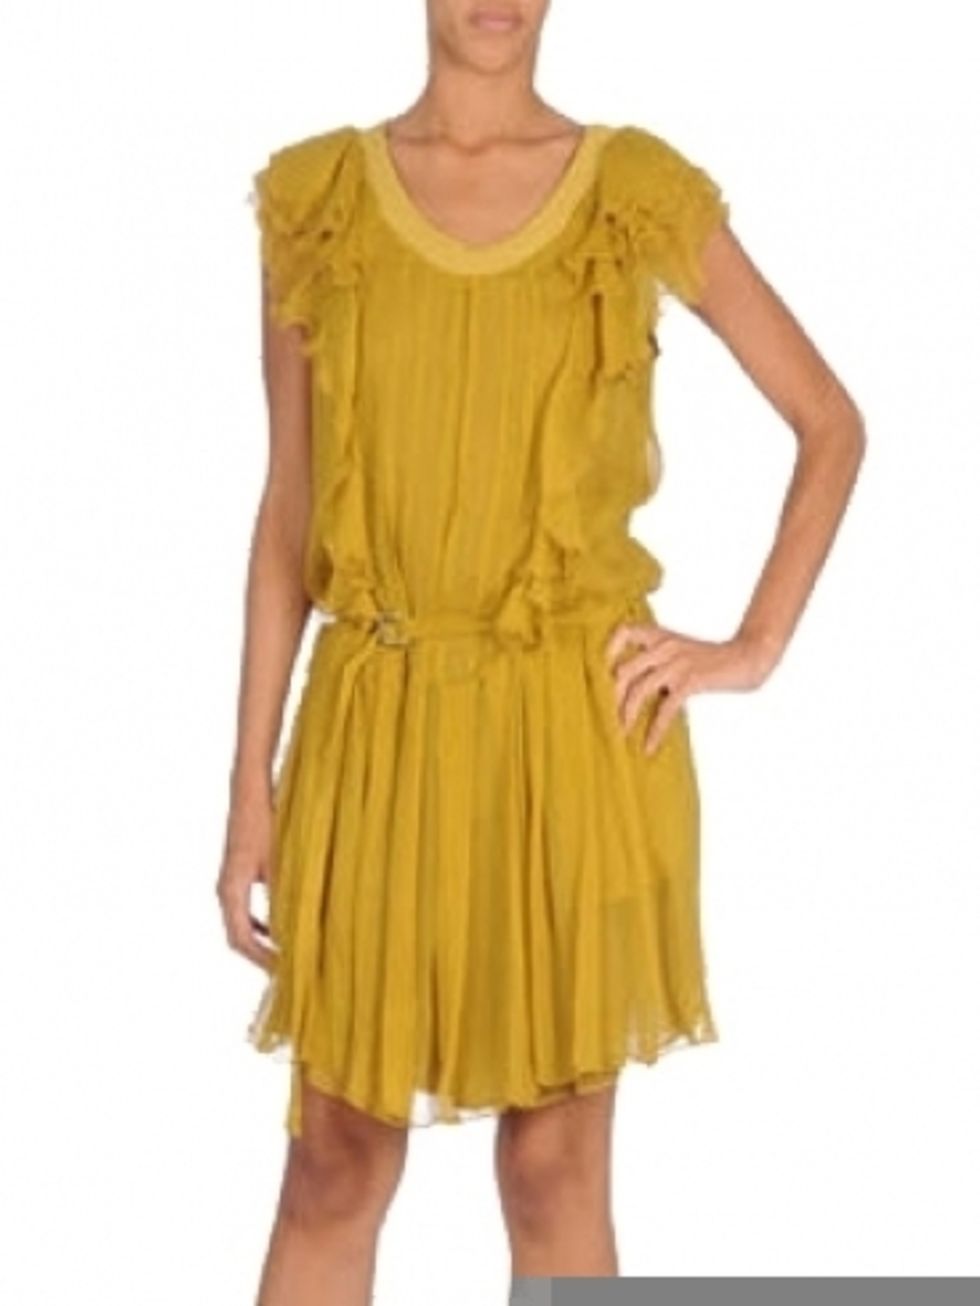 Yellow, Sleeve, Dress, Shoulder, Standing, Hand, Joint, Human leg, One-piece garment, Elbow, 